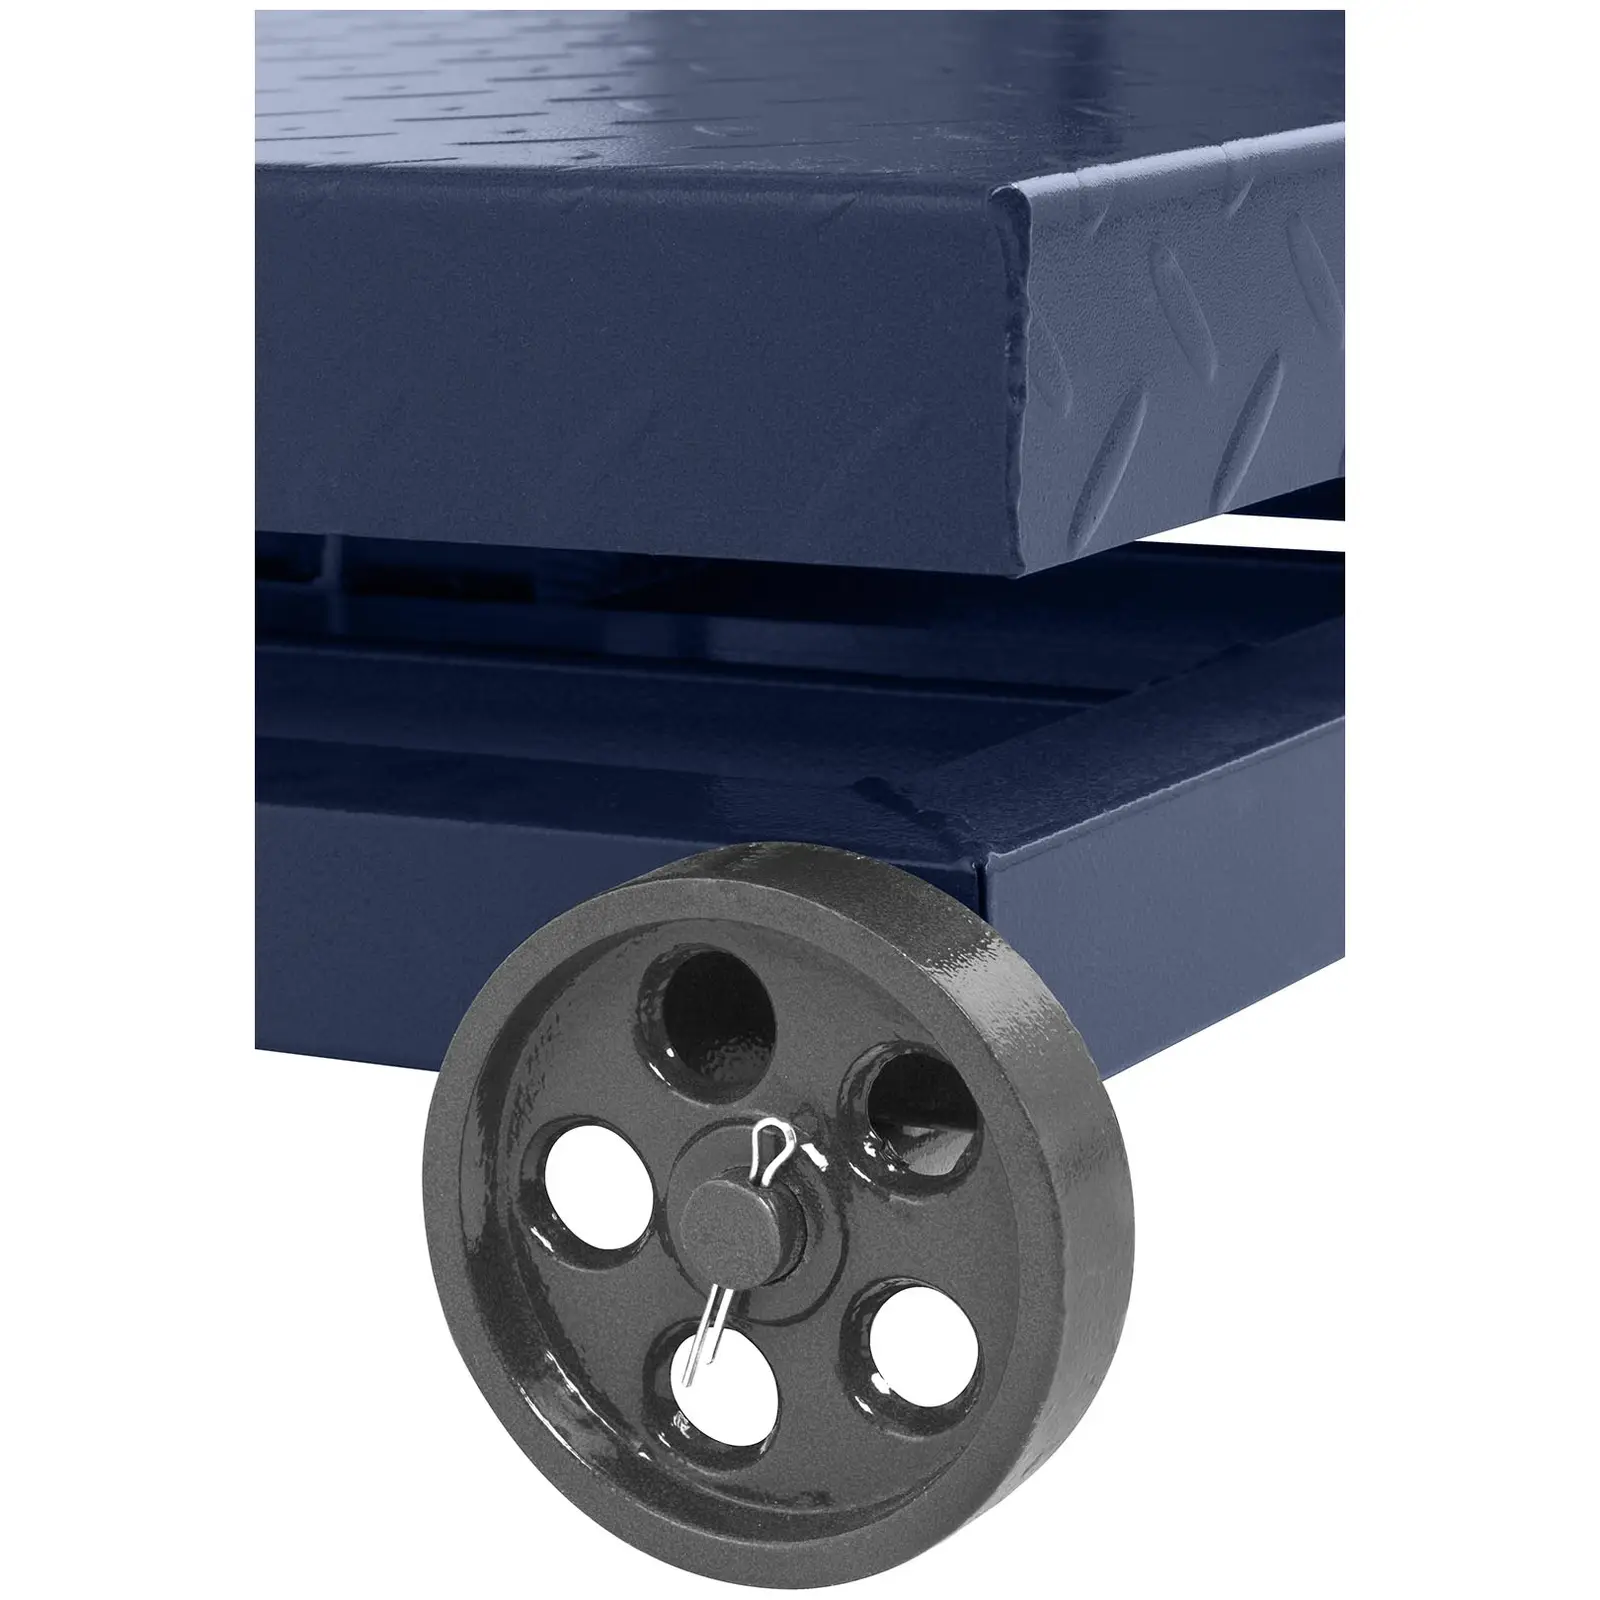 Produtos recondicionados Balança de Plataforma - 600 kg / 100 g - com rodas